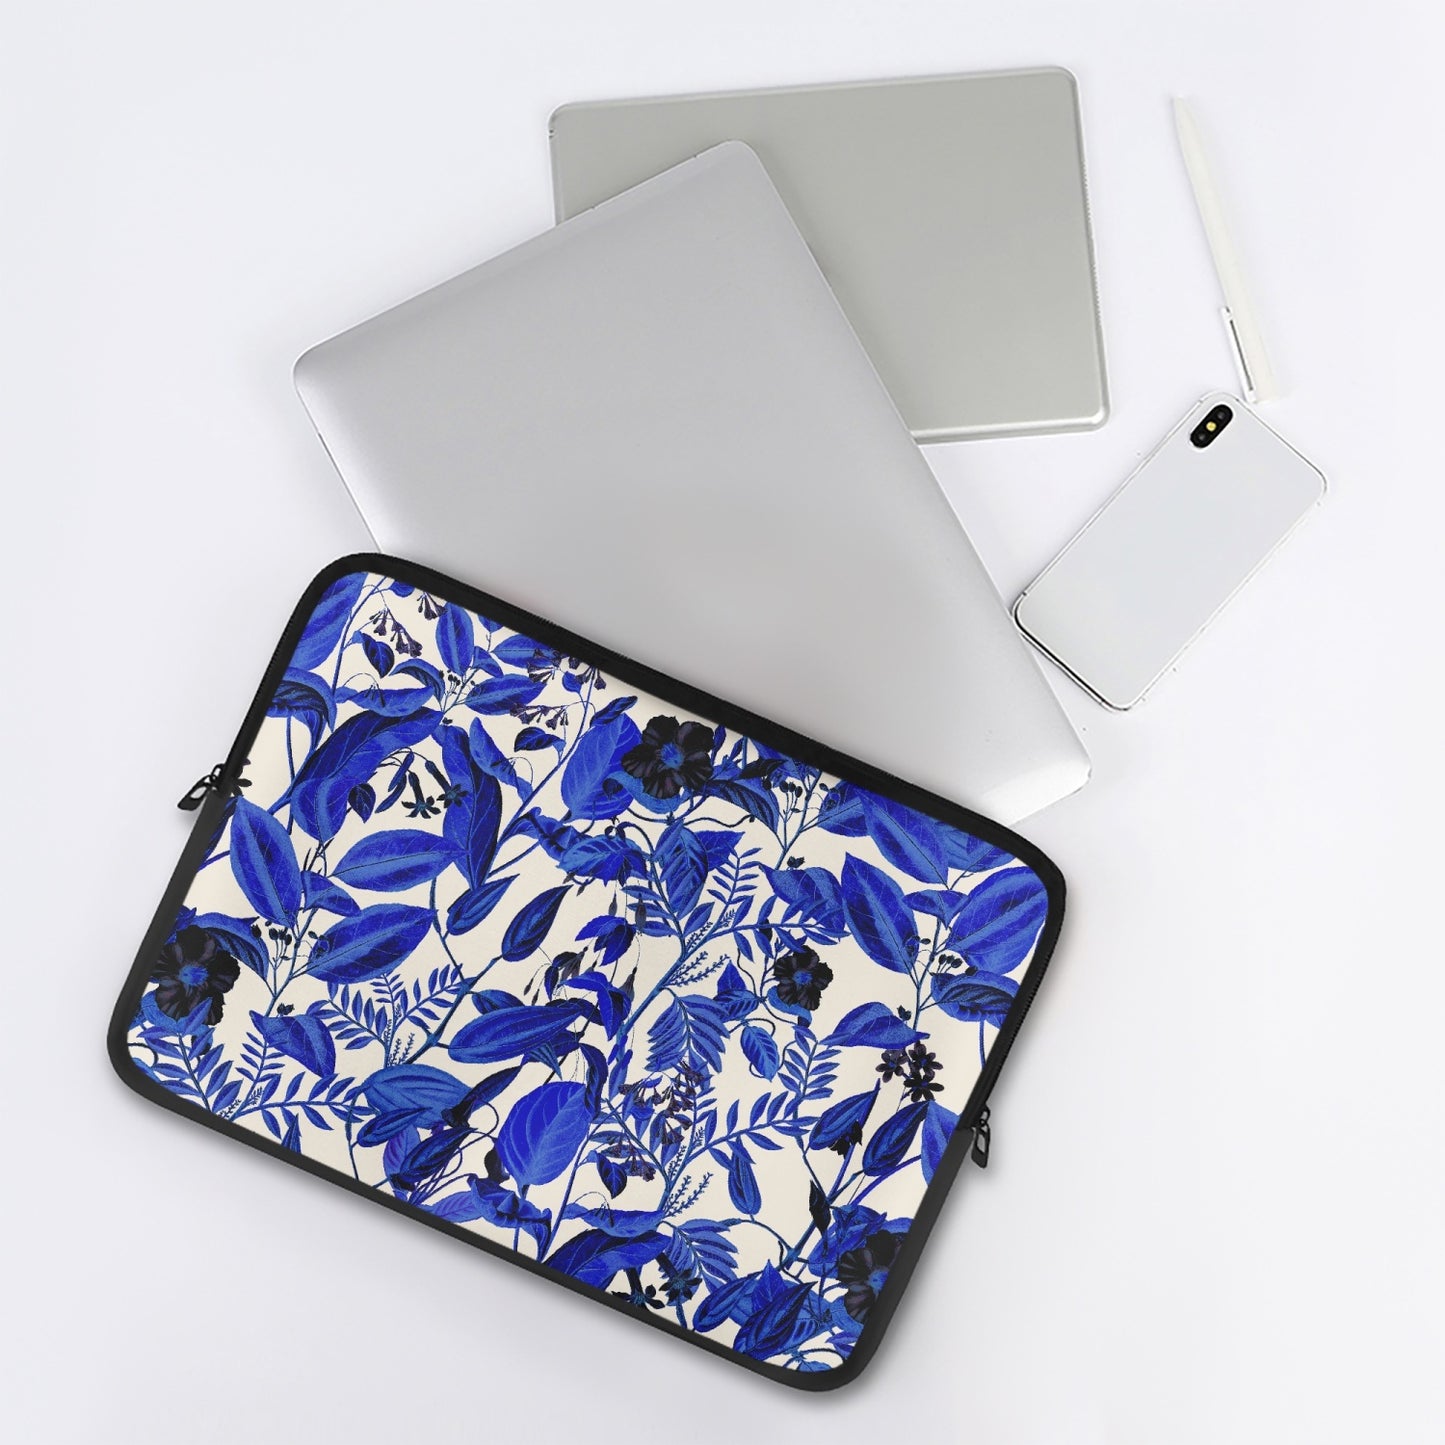 «Blue Foliage» Laptop Sleeve